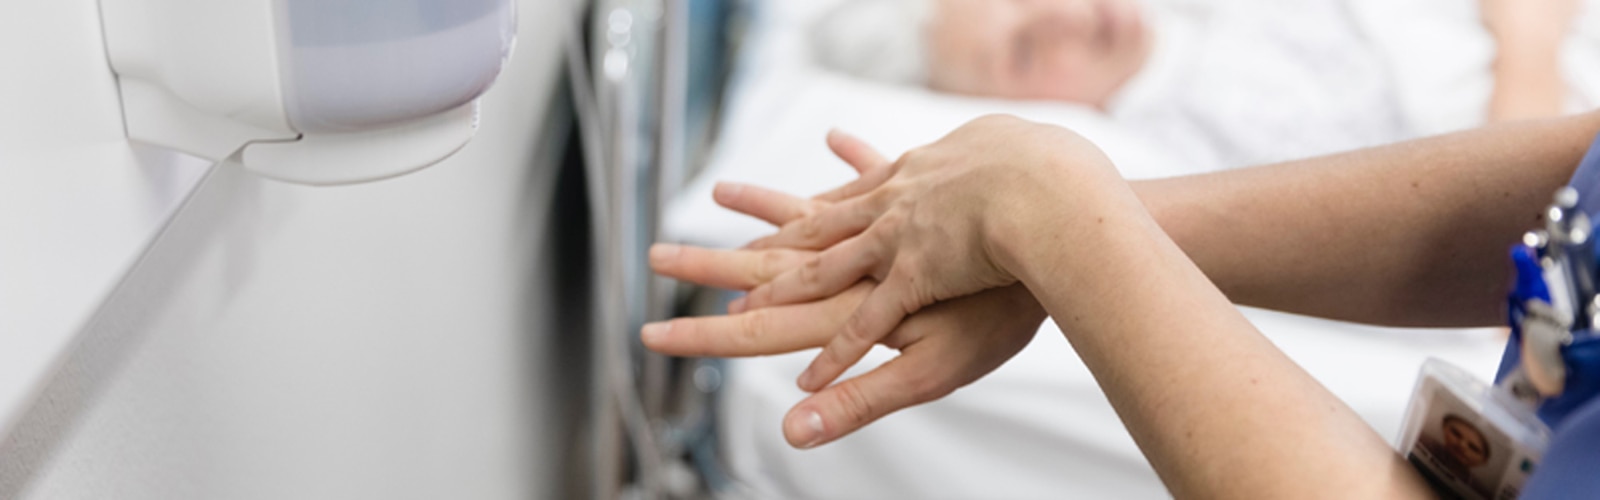 Kézmosás egy kórházban